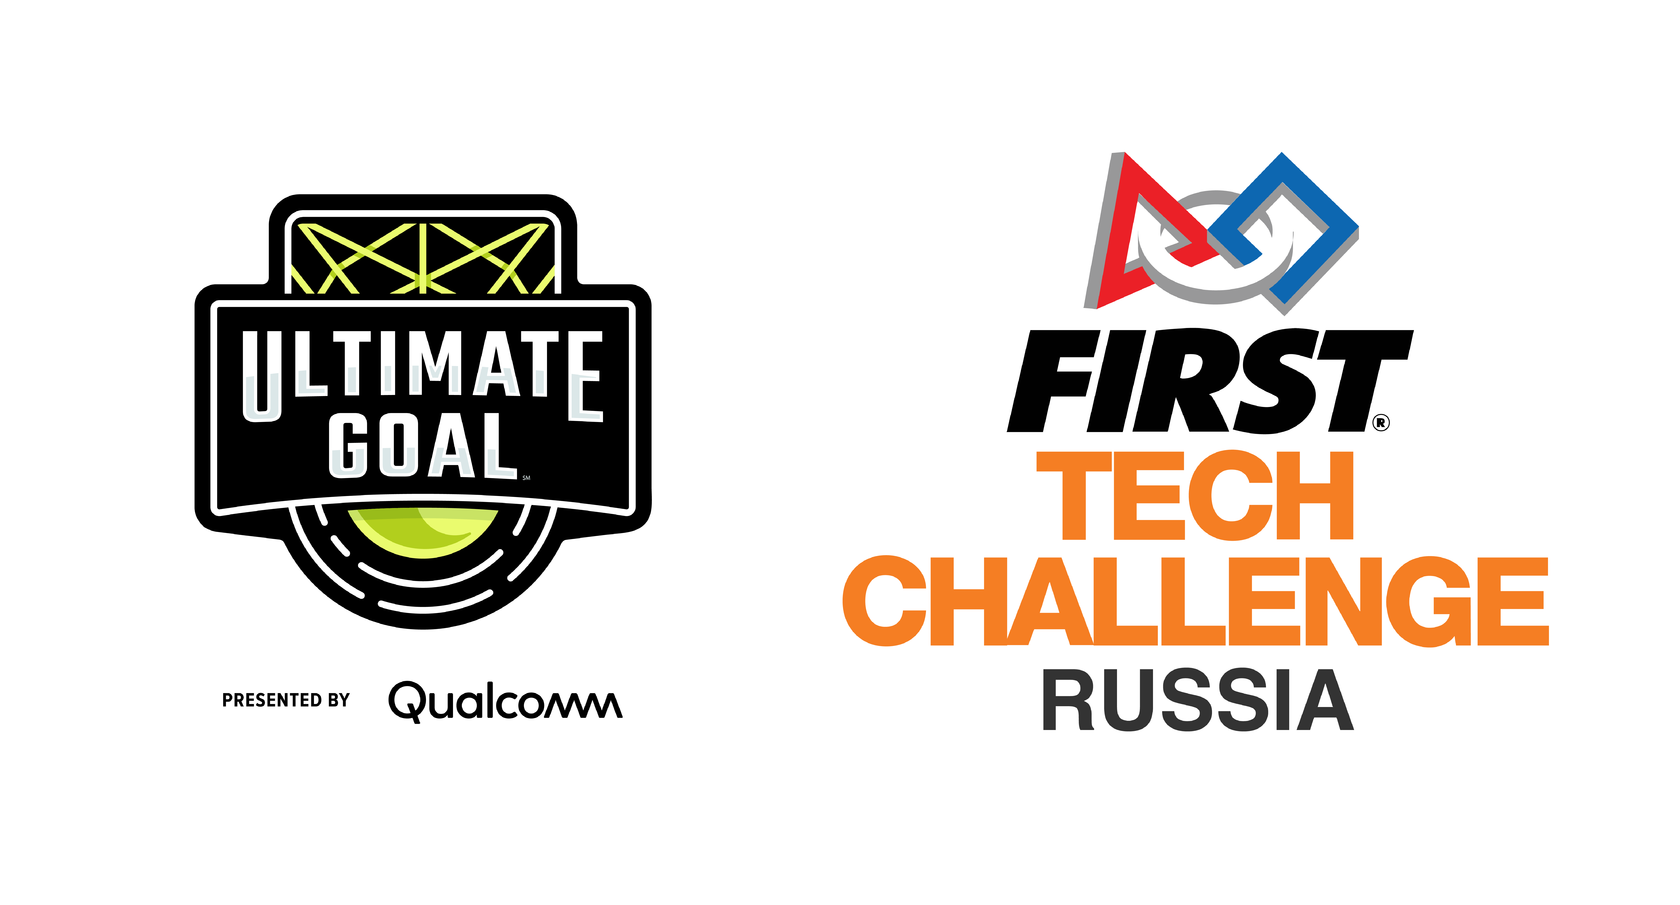 First tech. First Tech Challenge. First Tech Challenge 2021. First Tech Challenge 2020. First Tech Challenge Russia.